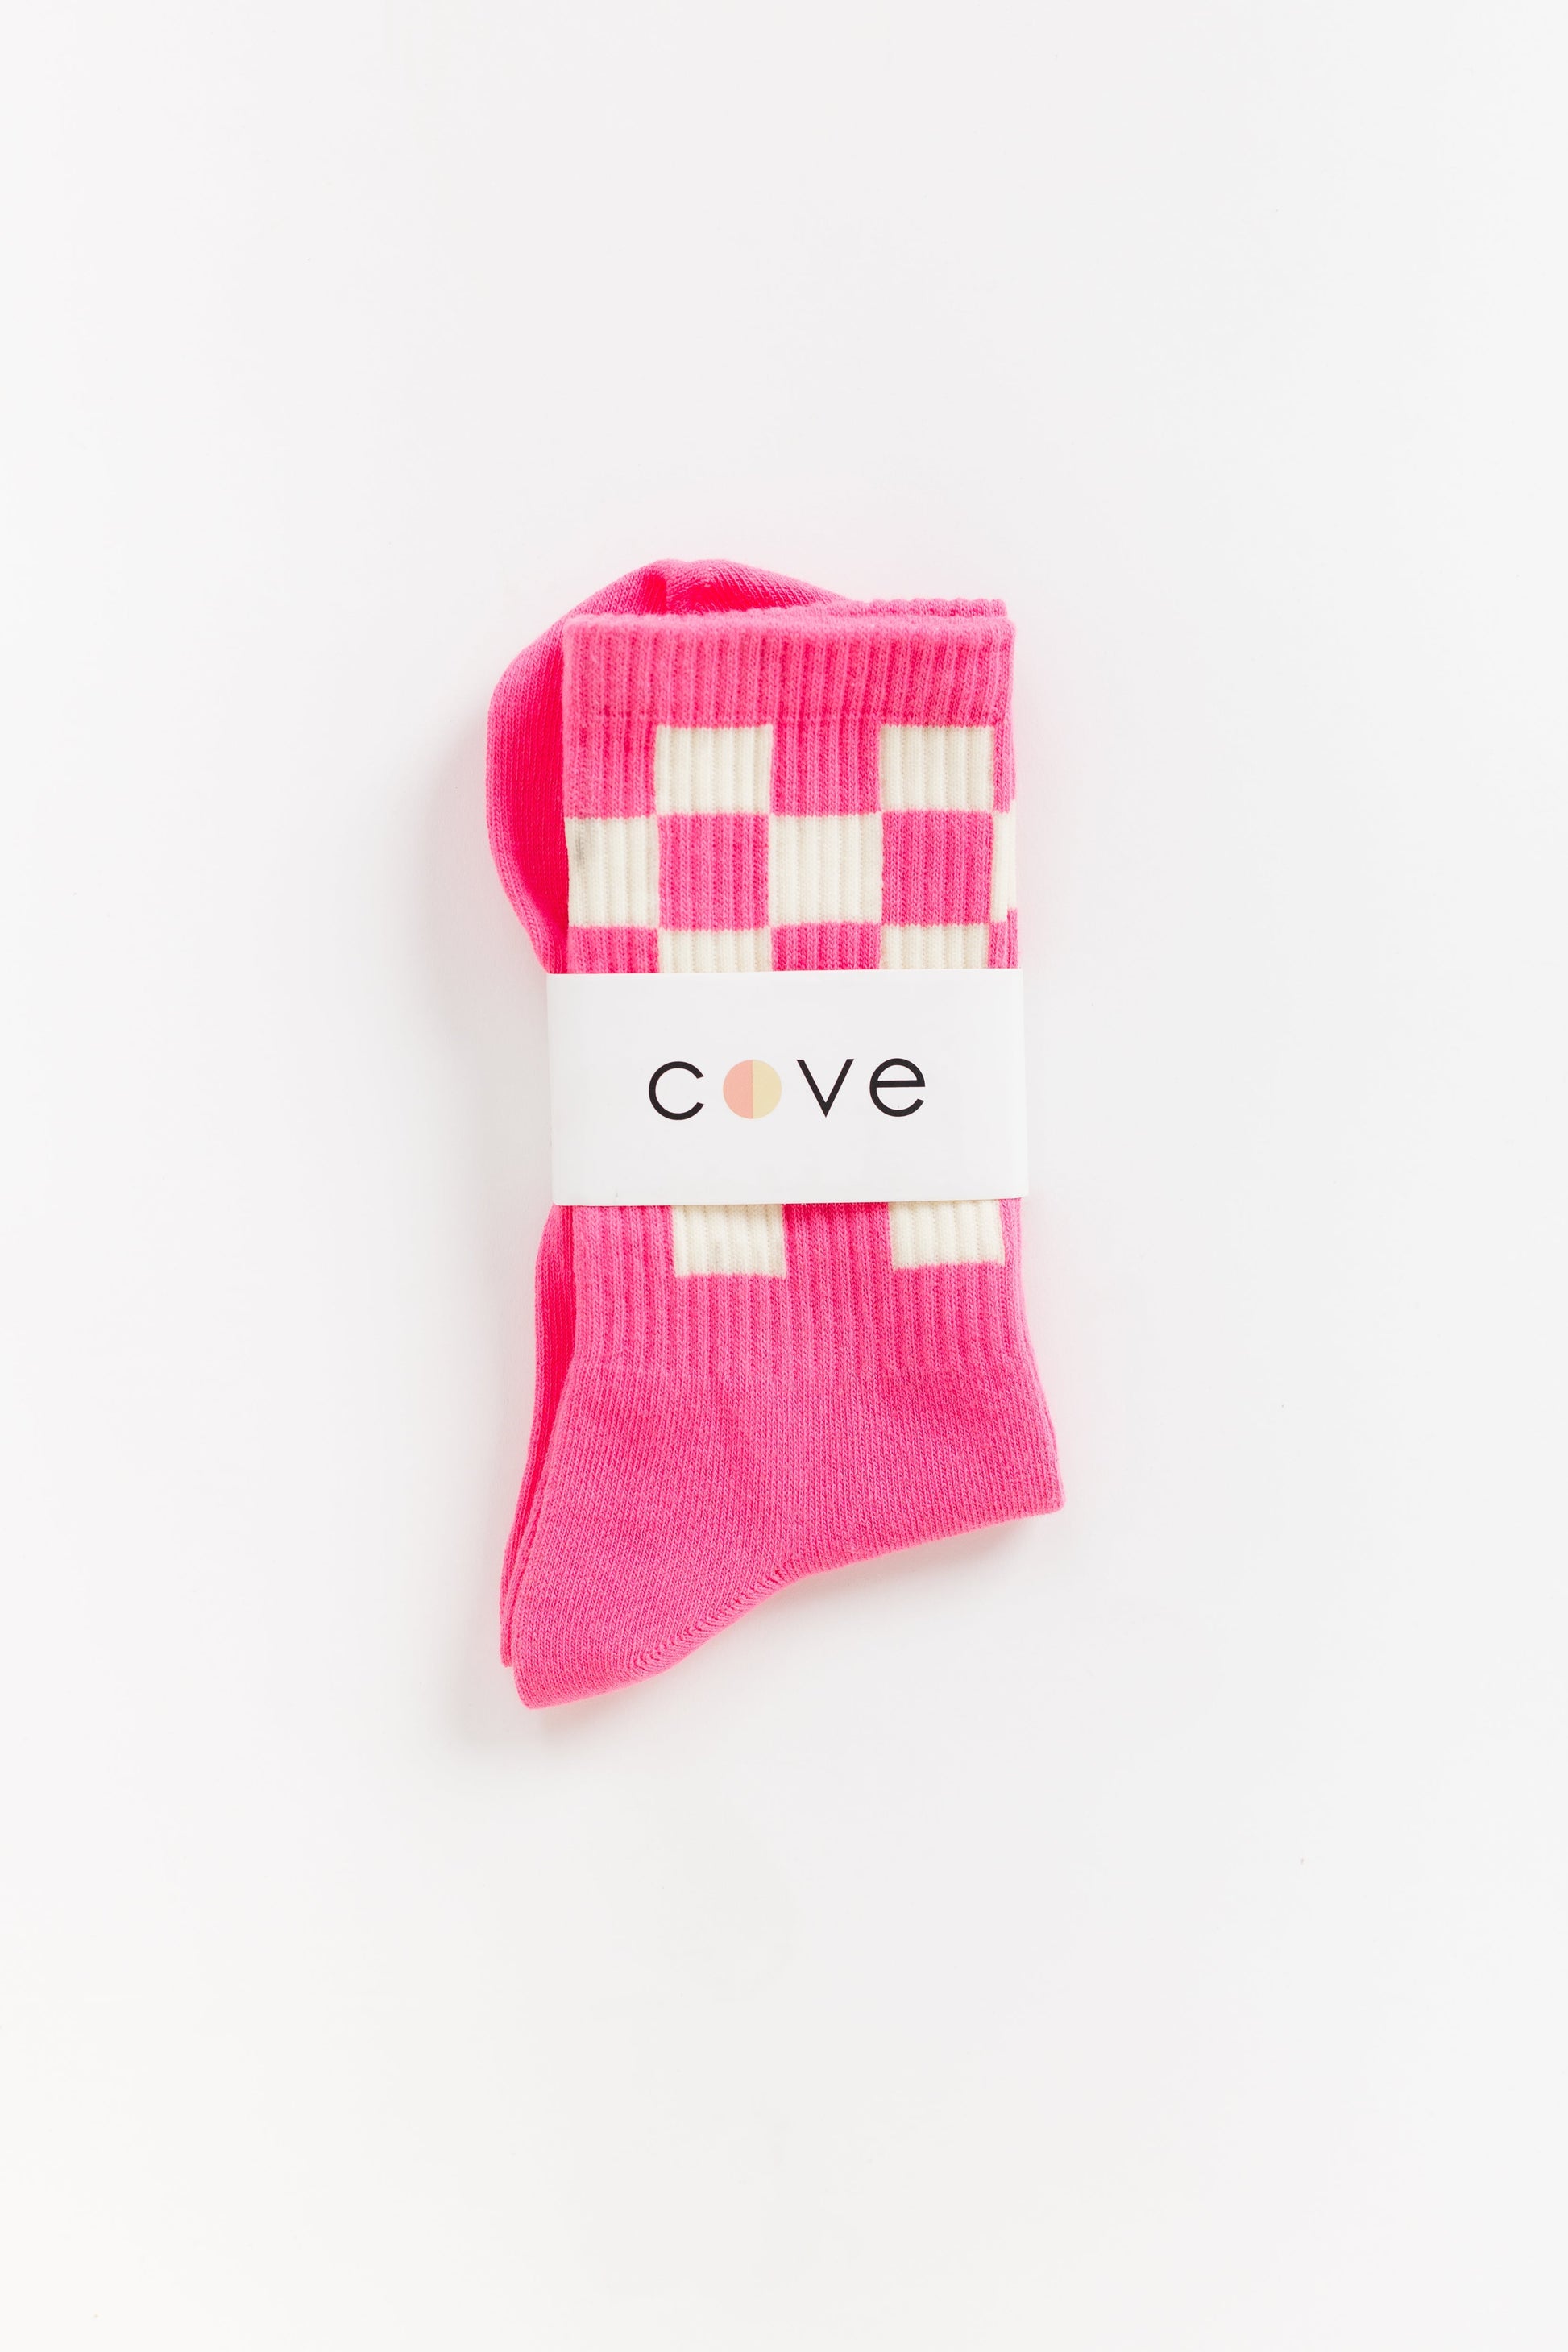 Checker Retro Socks WOMEN'S SOCKS Cove Accessories Bright Pink/Wht OS 